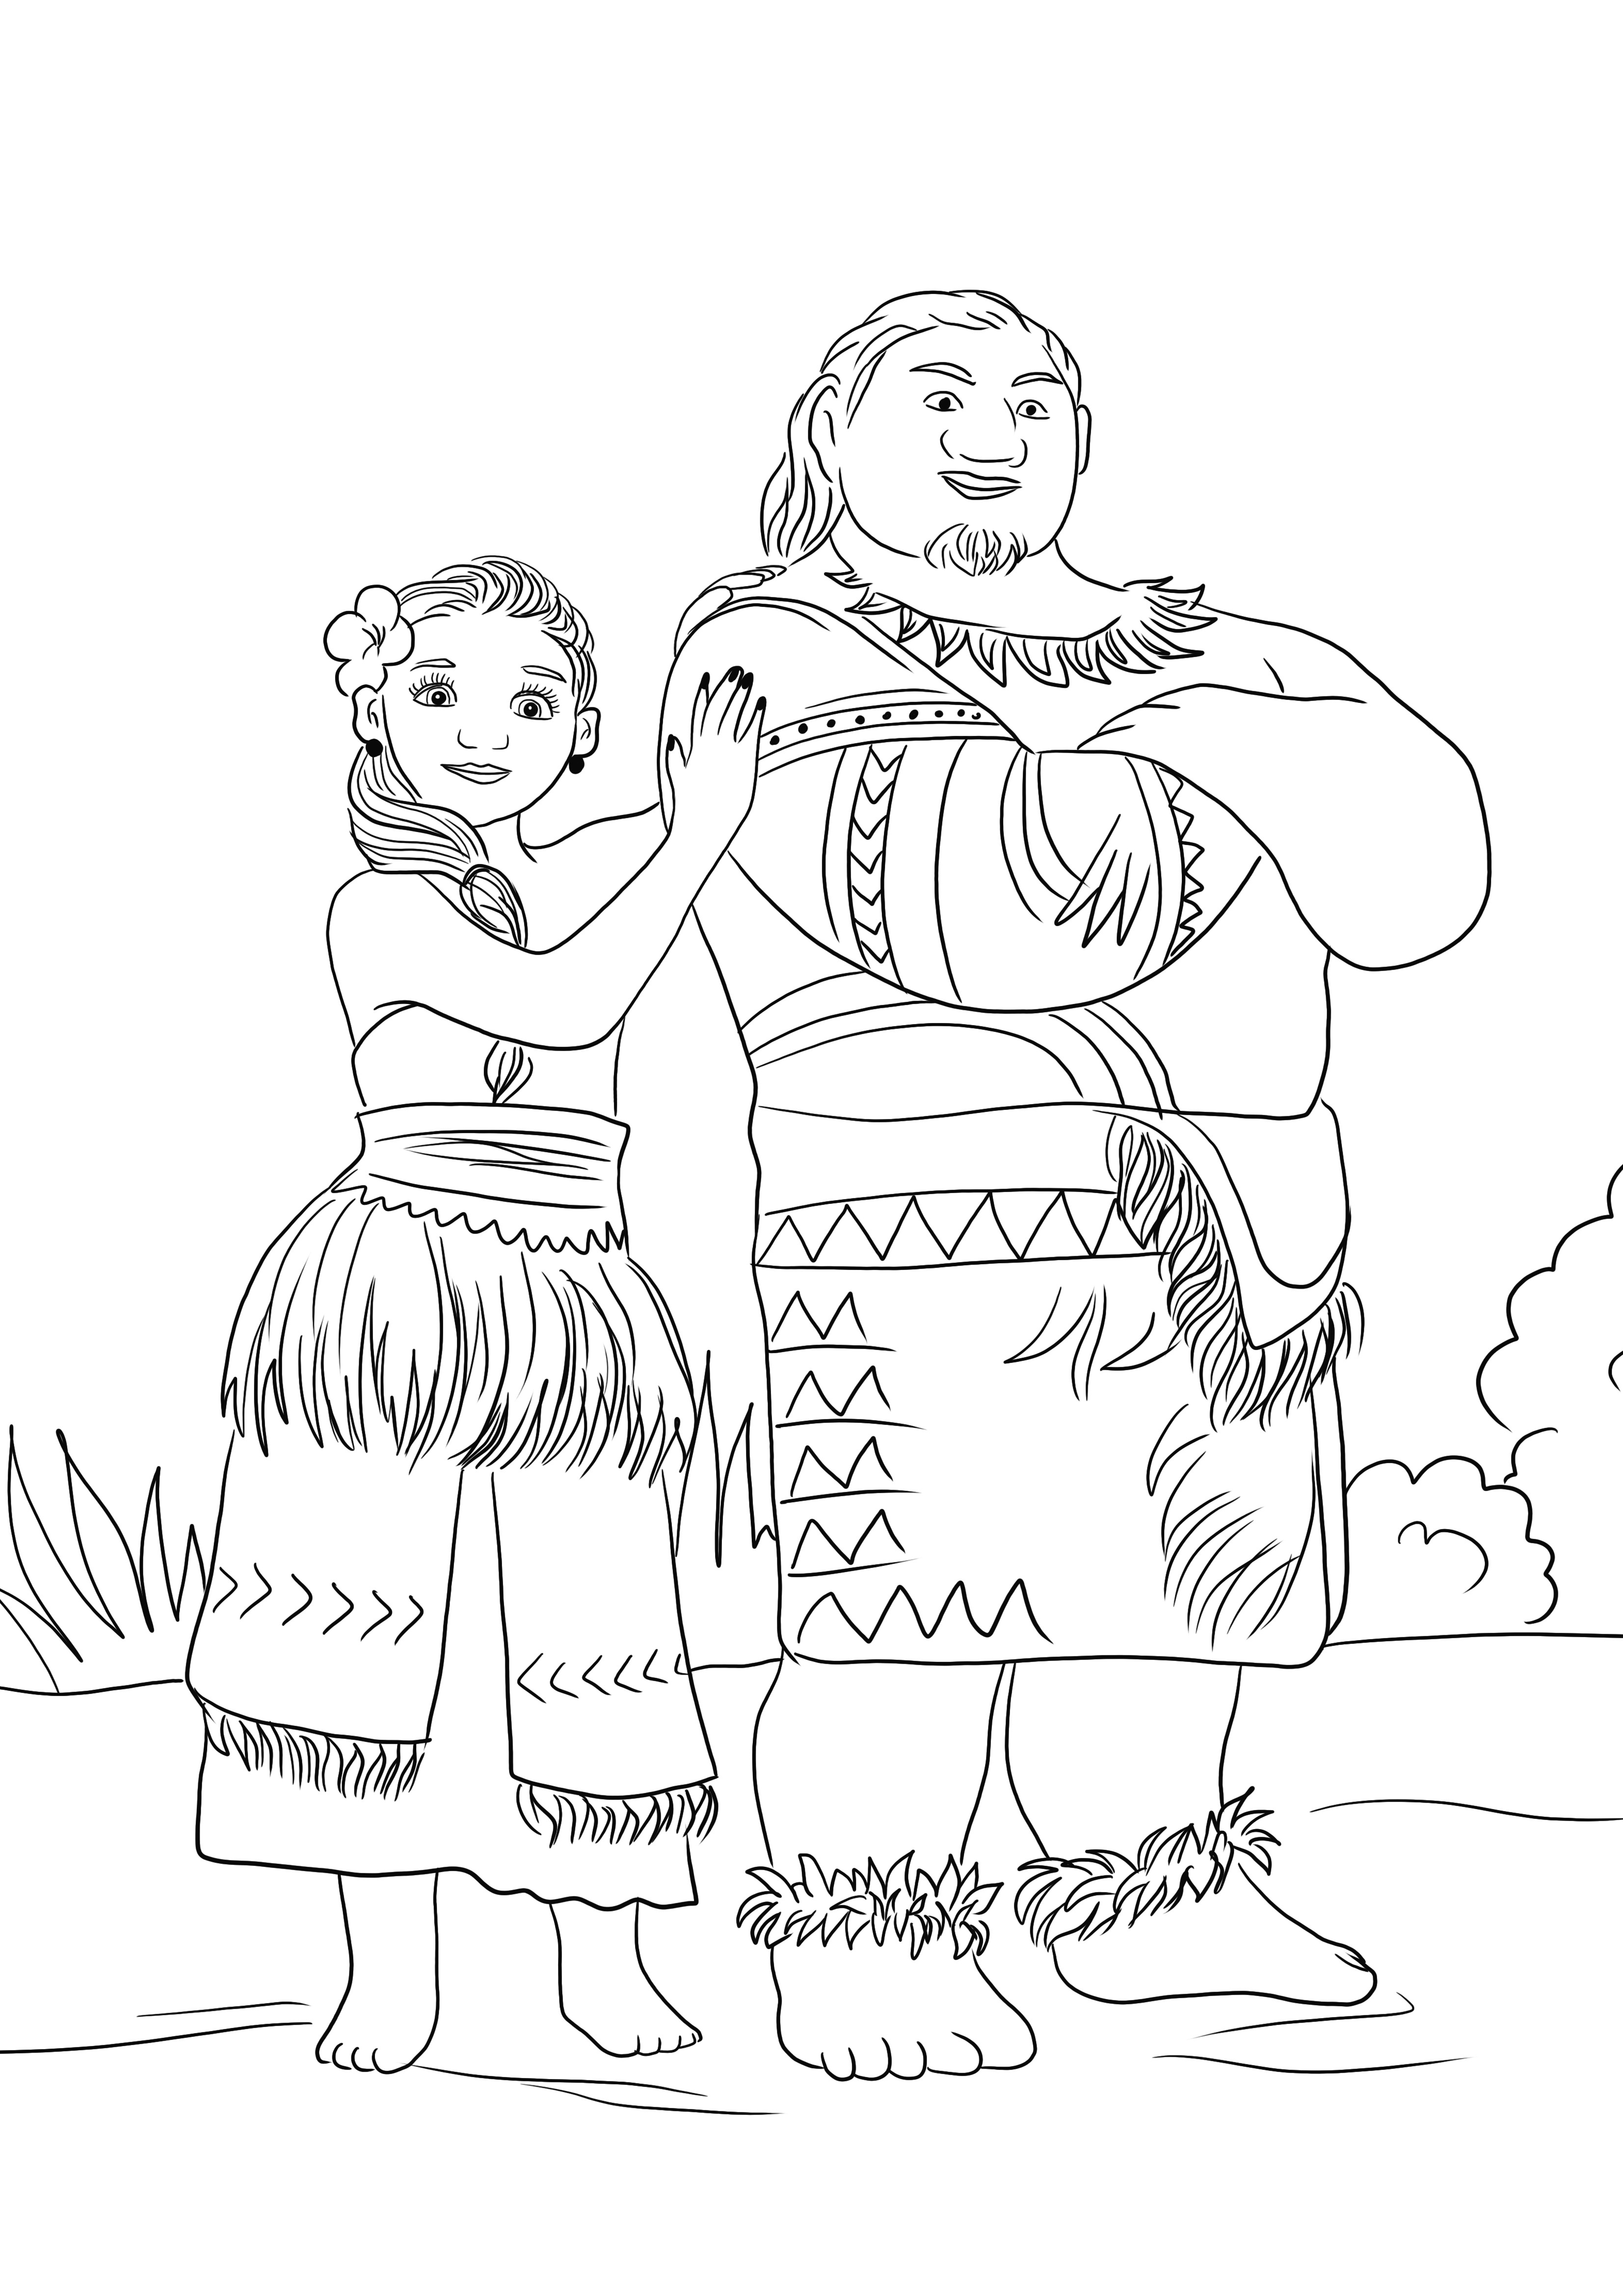 Moana and Chief Tui